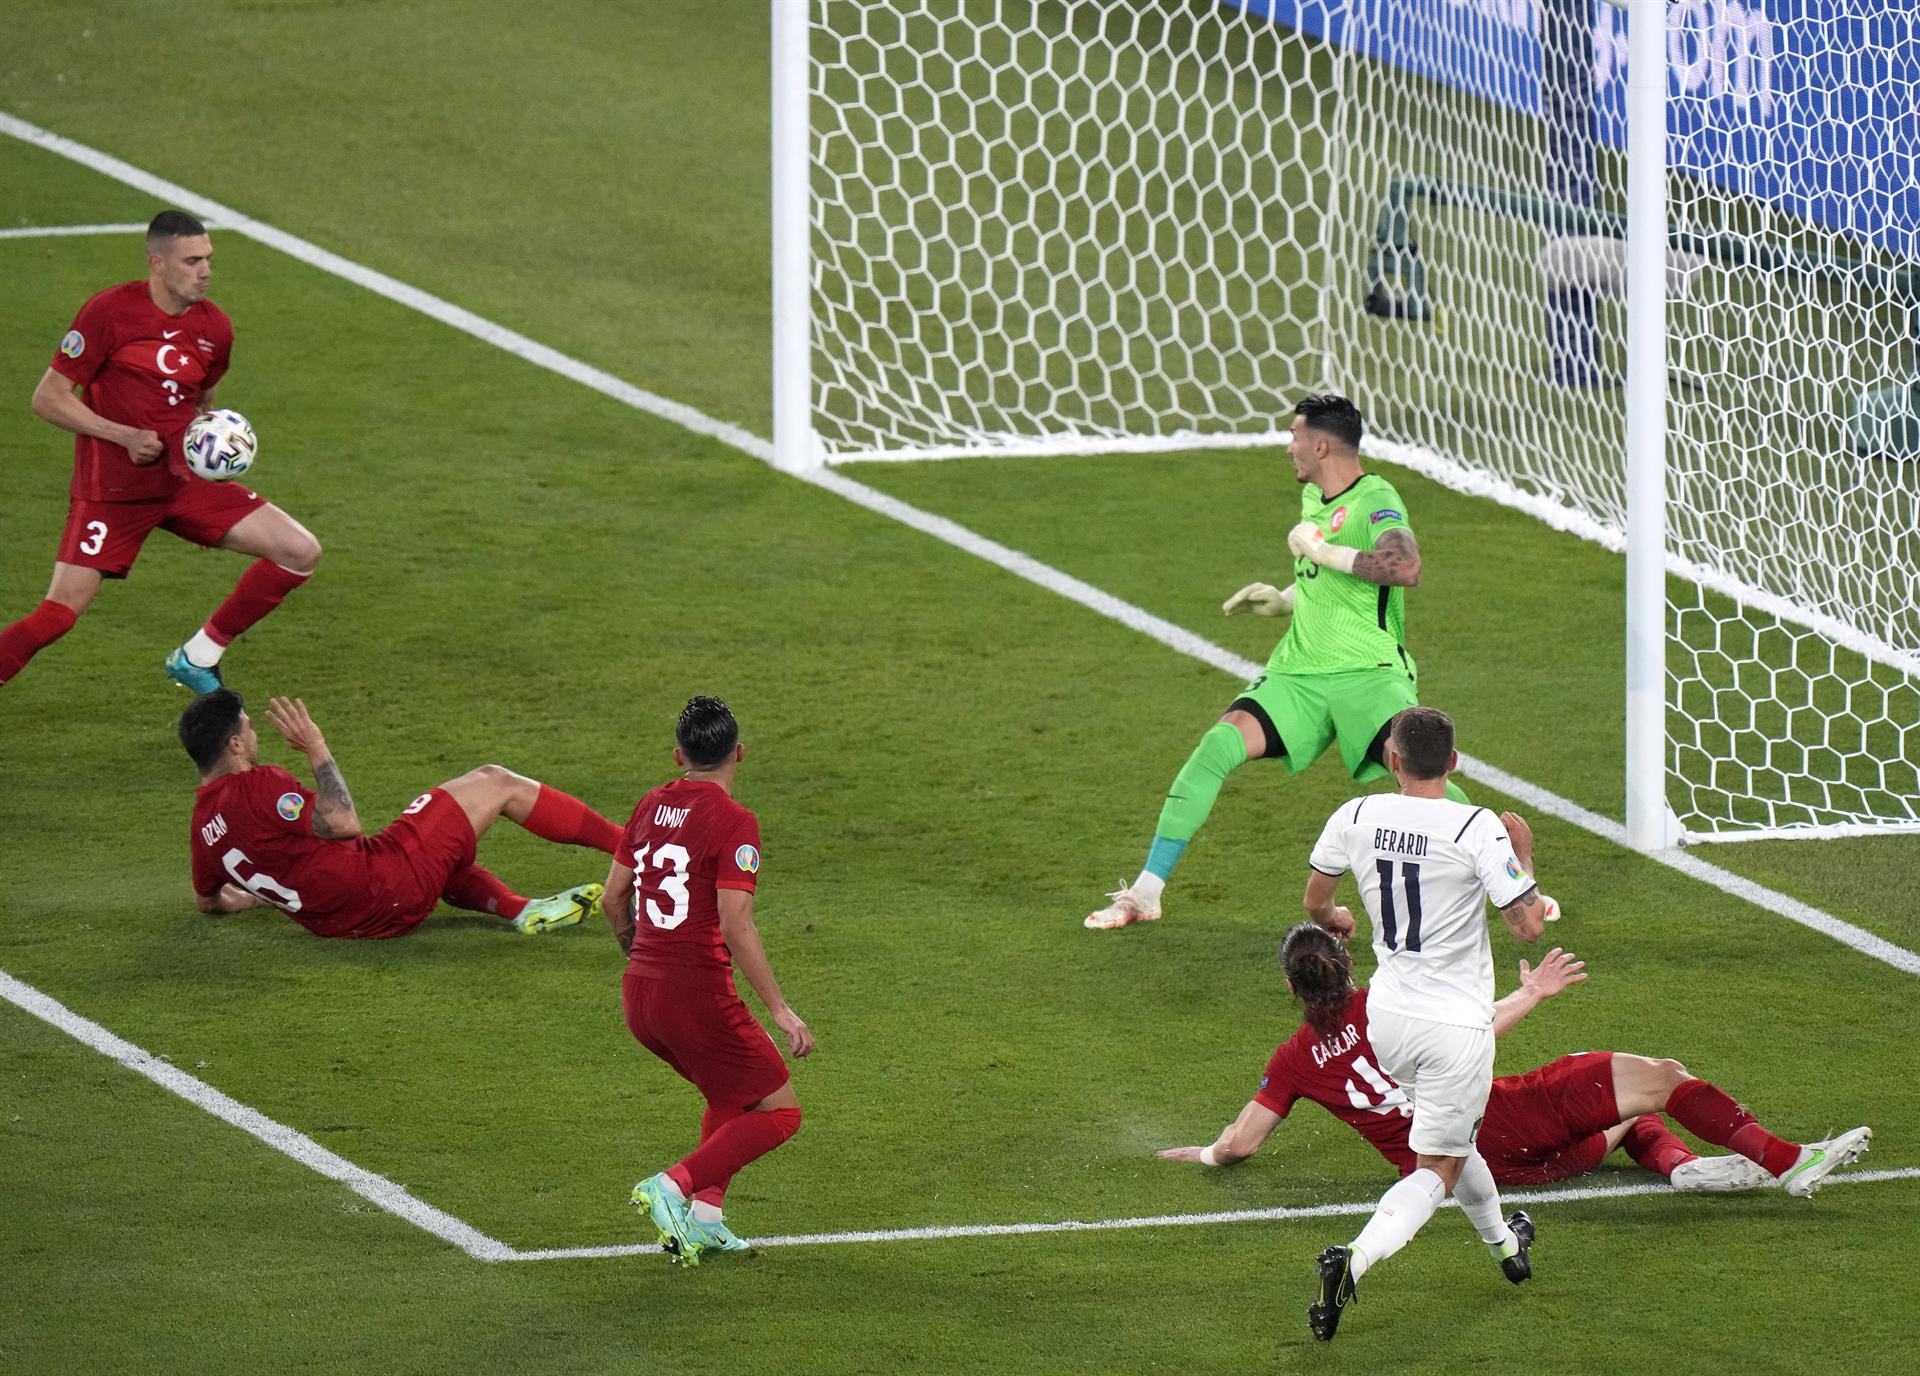 Y el primer gol de la Eurocopa fue… ¡Un AUTOGOL! (VIDEO)